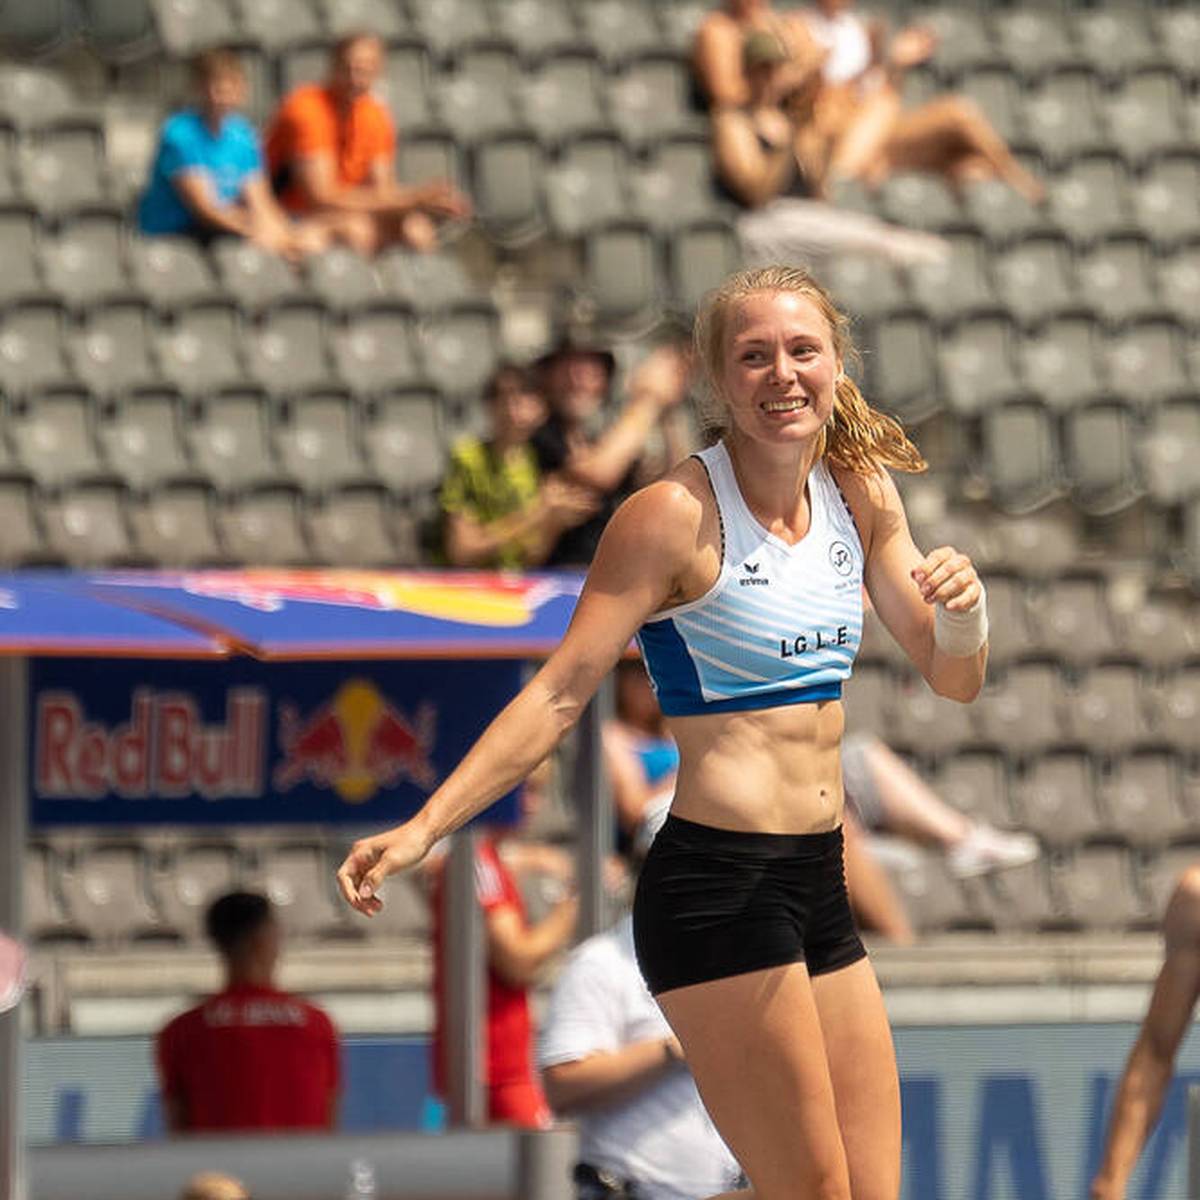 Bei den deutschen Leichtathletik-Meisterschaften hat Anjuli Knäsche völlig überraschend den Titel gewonnen. Dabei hatte die Stabhochspringerin bereits mit ihrer Laufbahn abgeschlossen.